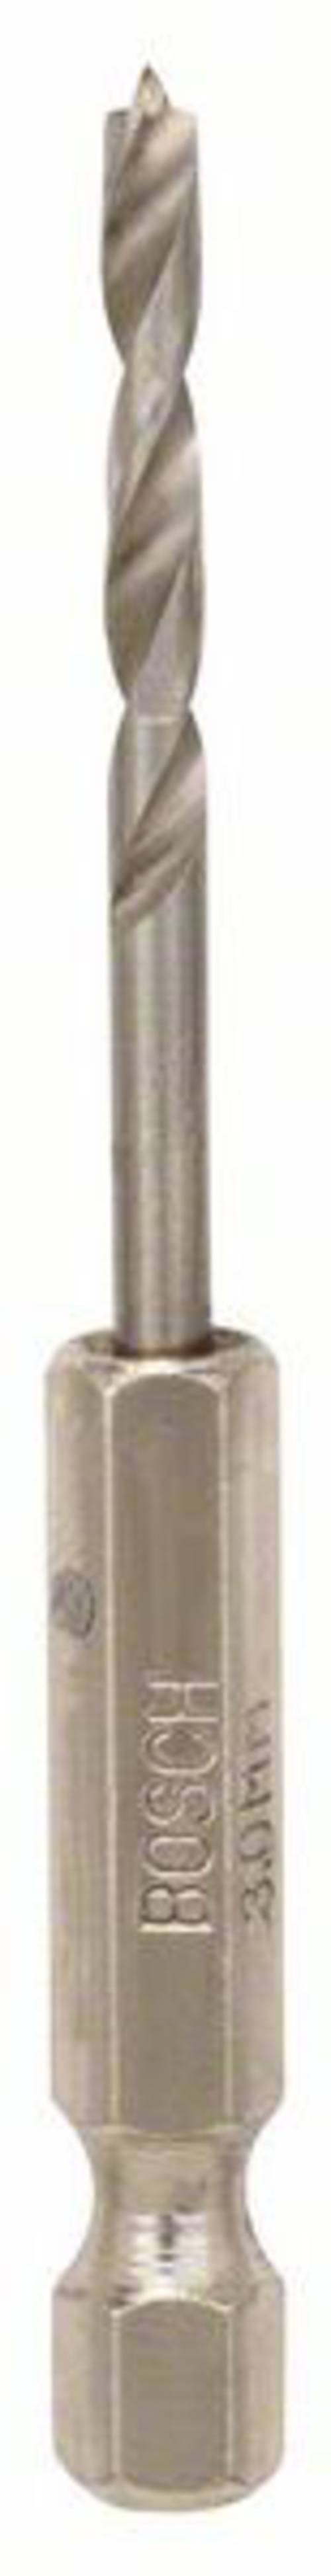 Holzspiralbohrer 3-16 mm Bohrer mit Zentrierspitze Holzbohrer Spiralbohrer